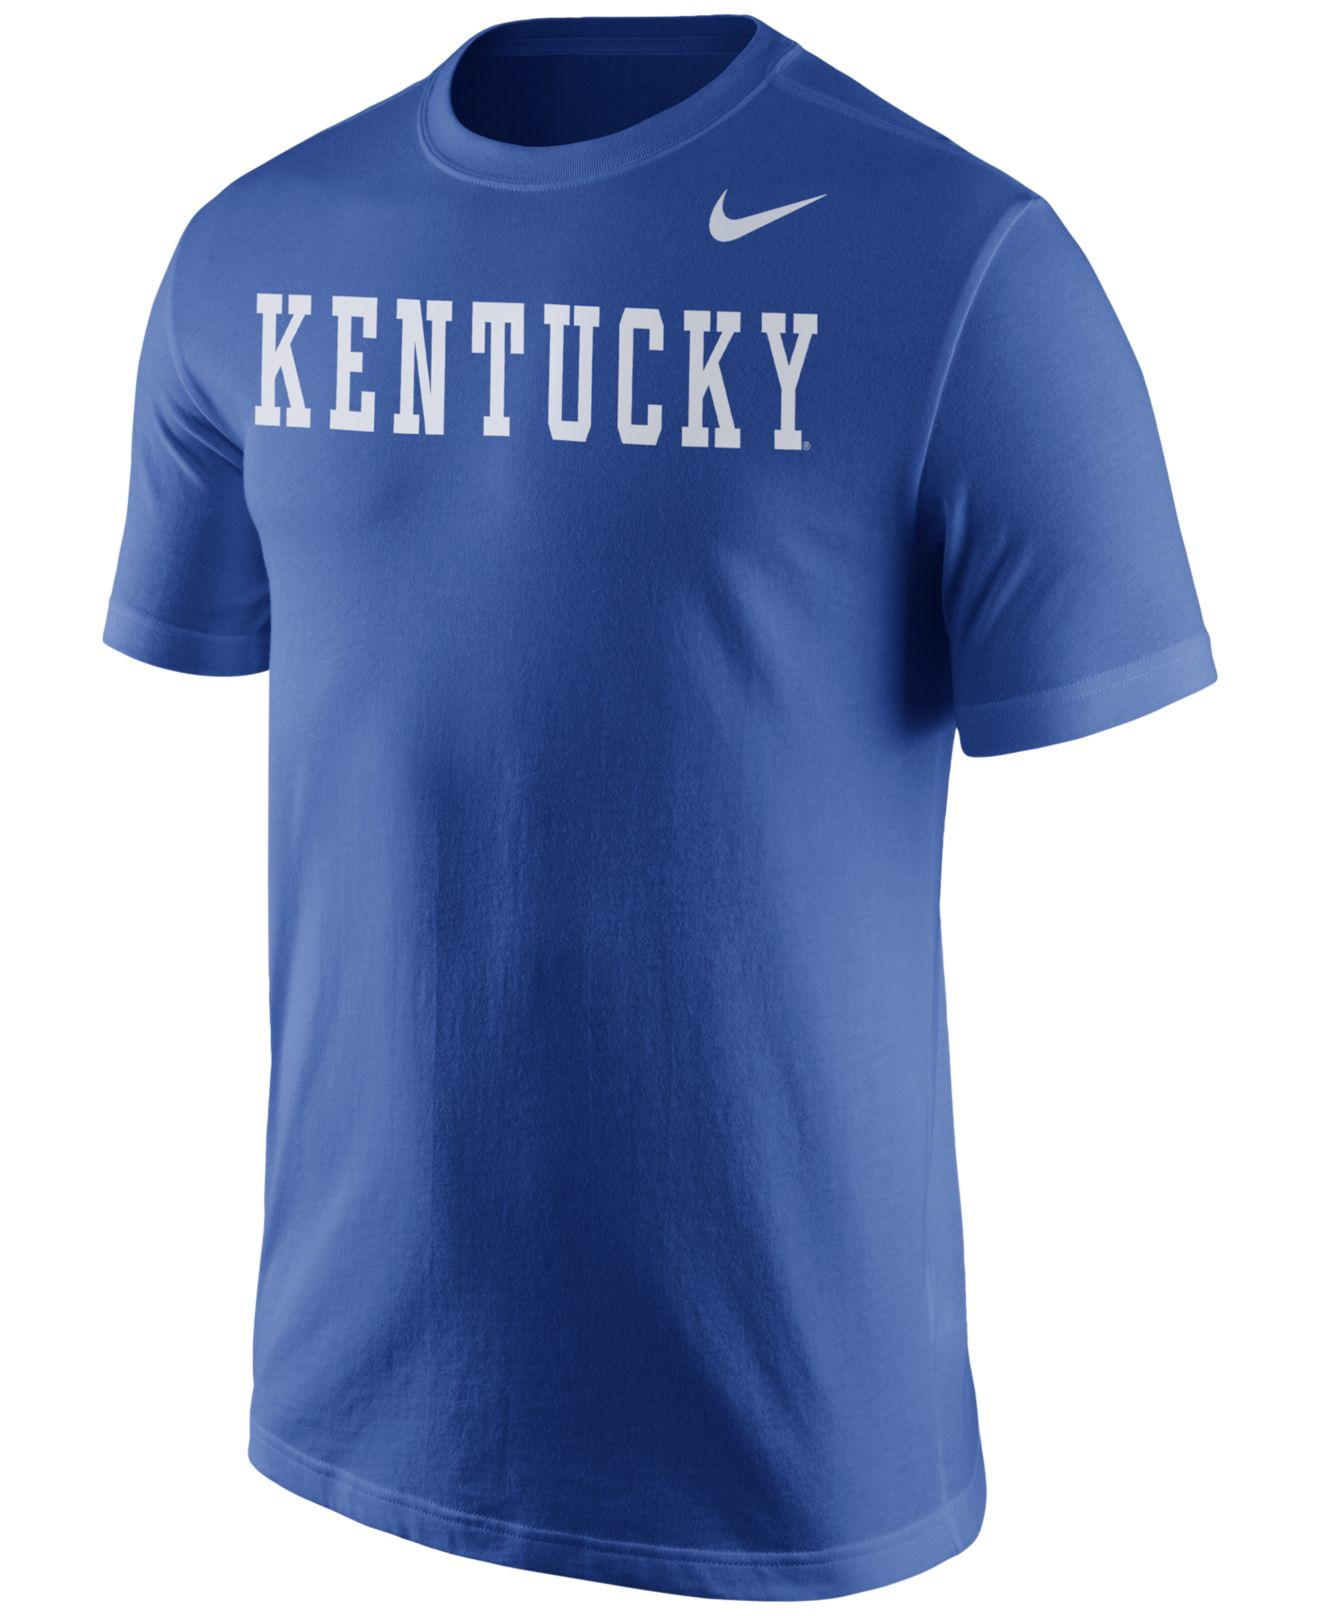 Lyst - Nike Men's Kentucky Wildcats Wordmark T-shirt in Blue for Men